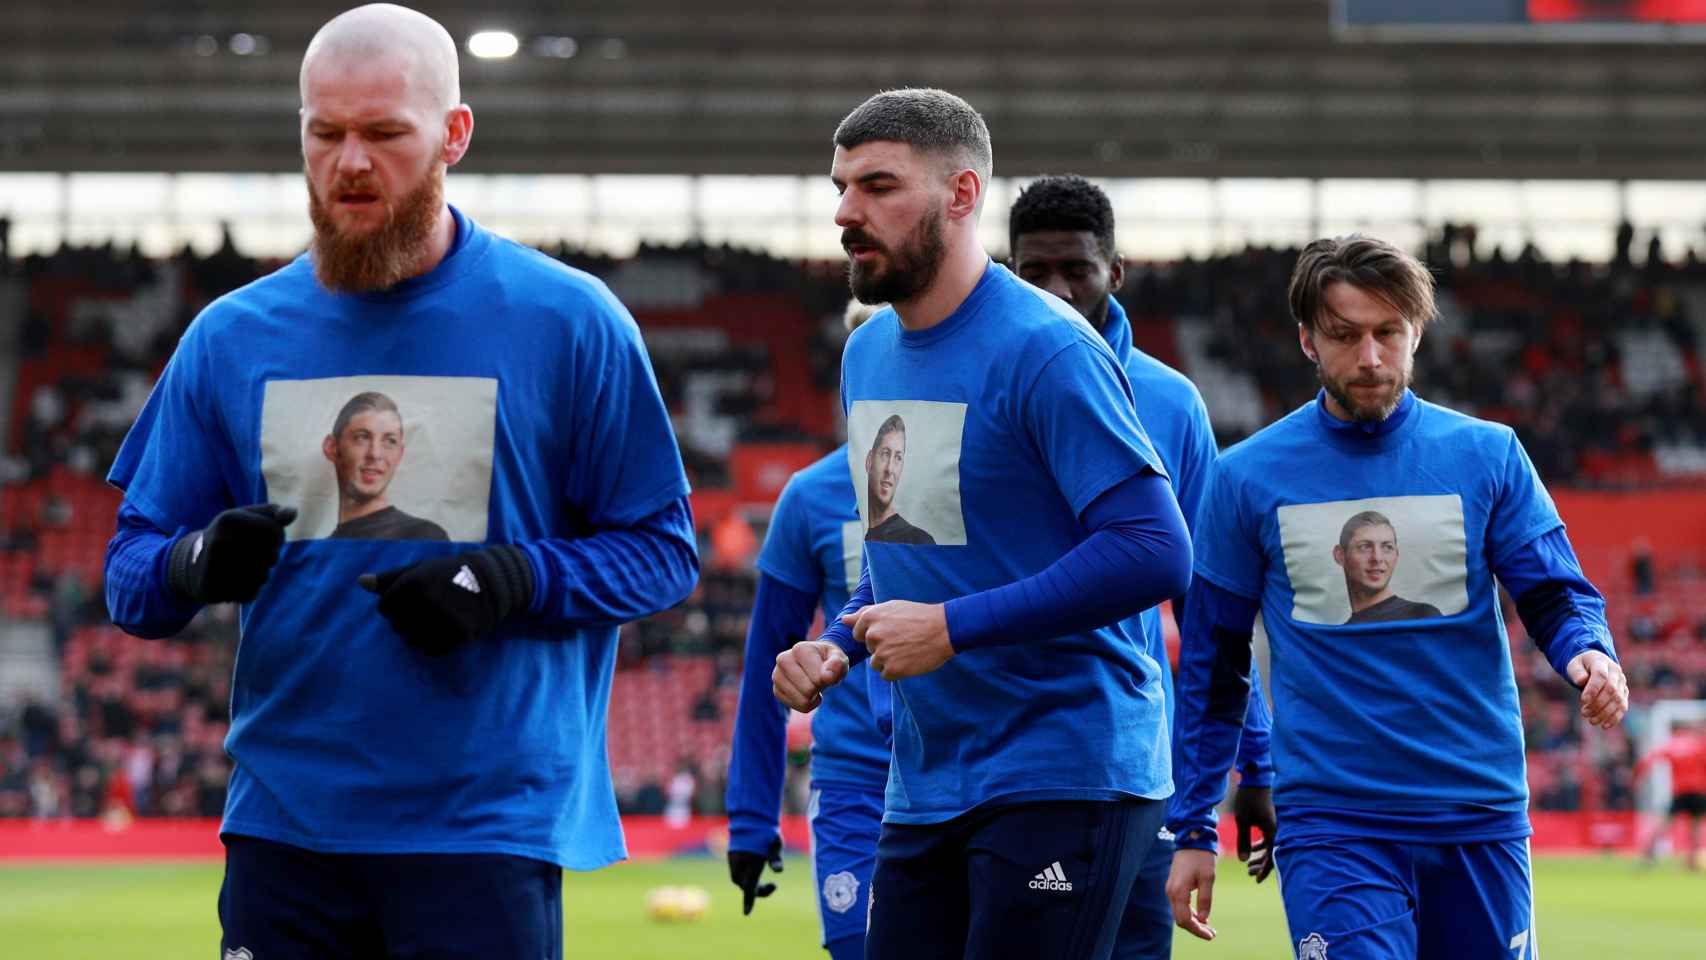 Los jugadores del Cardiff City calentando con camisetas en apoyo a Emiliano Sala